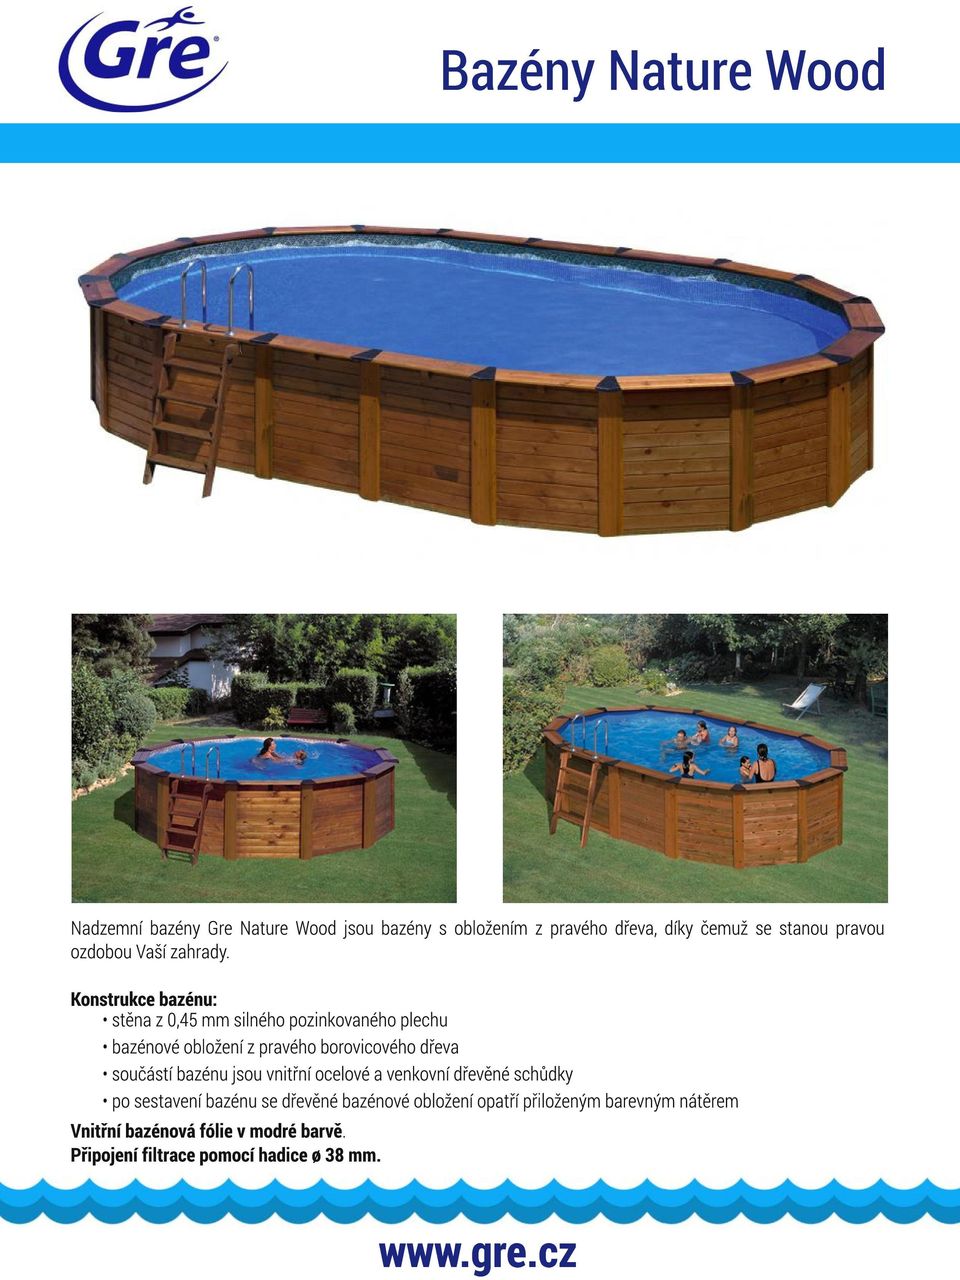 Konstrukce bazénu: stěna z 0,45 mm silného pozinkovaného plechu bazénové obložení z pravého borovicového dřeva součástí